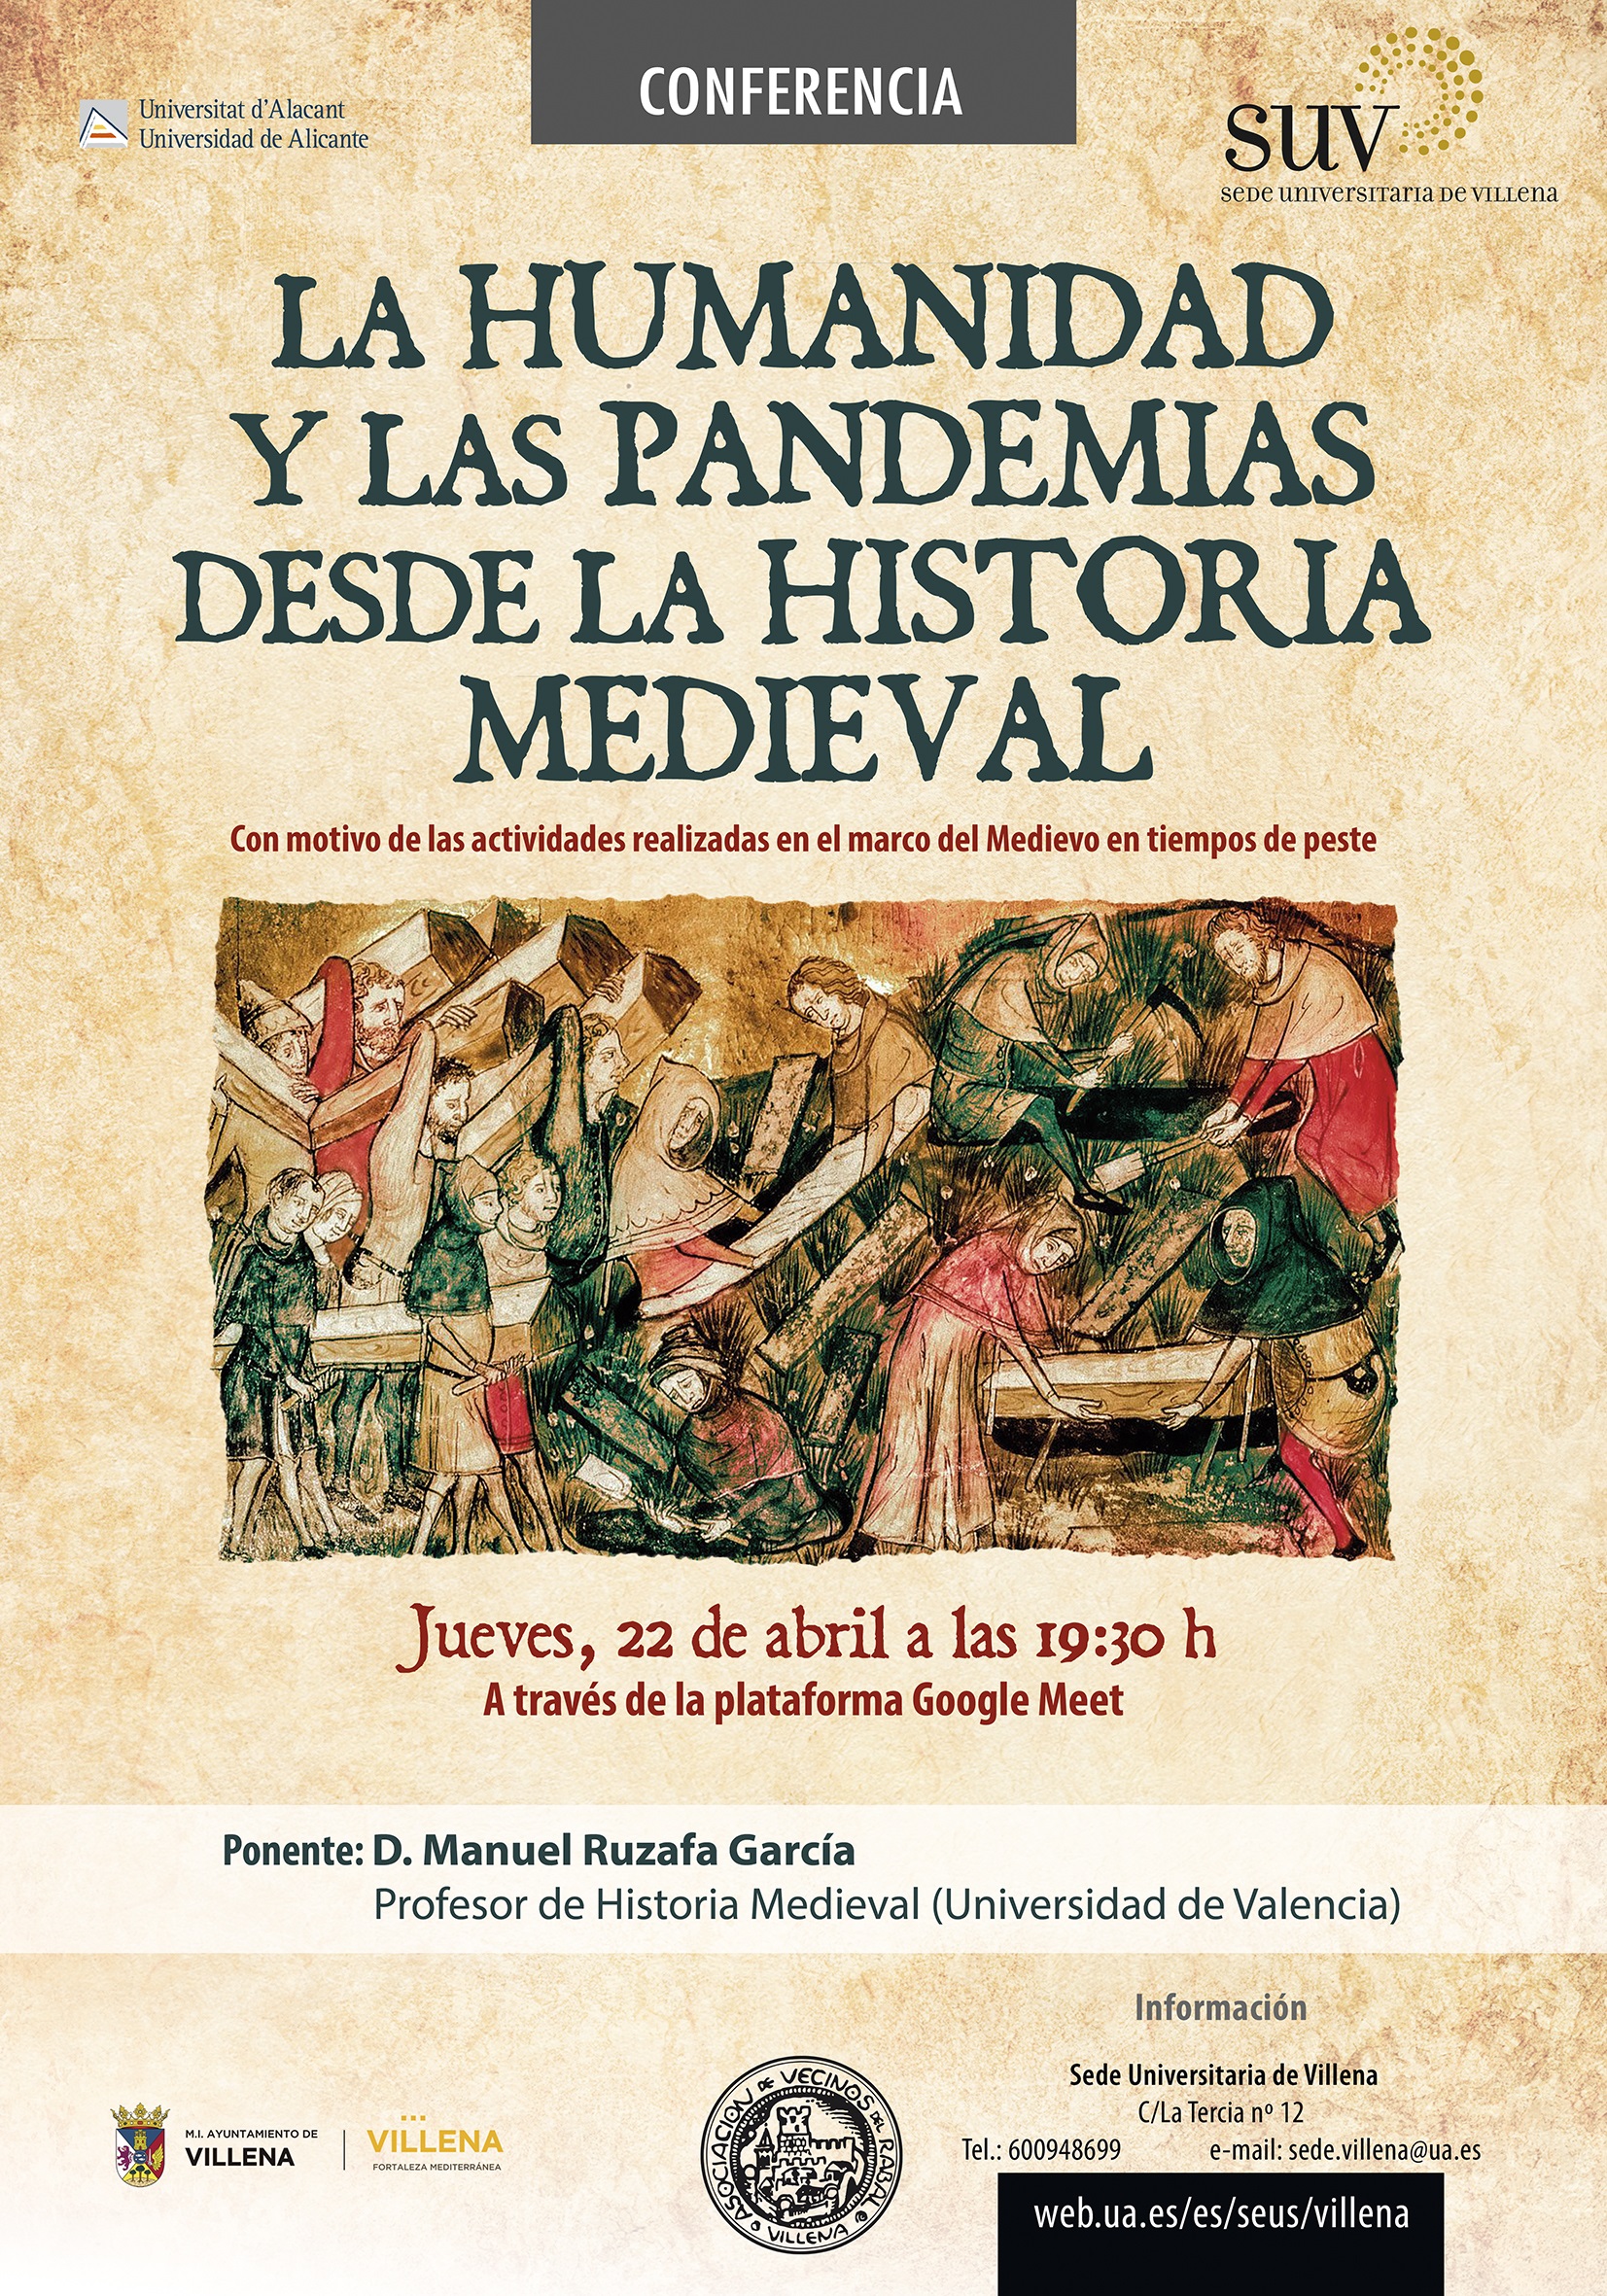 La Sede Universitaria organiza una charla sobre las pandemias desde la historia medieval